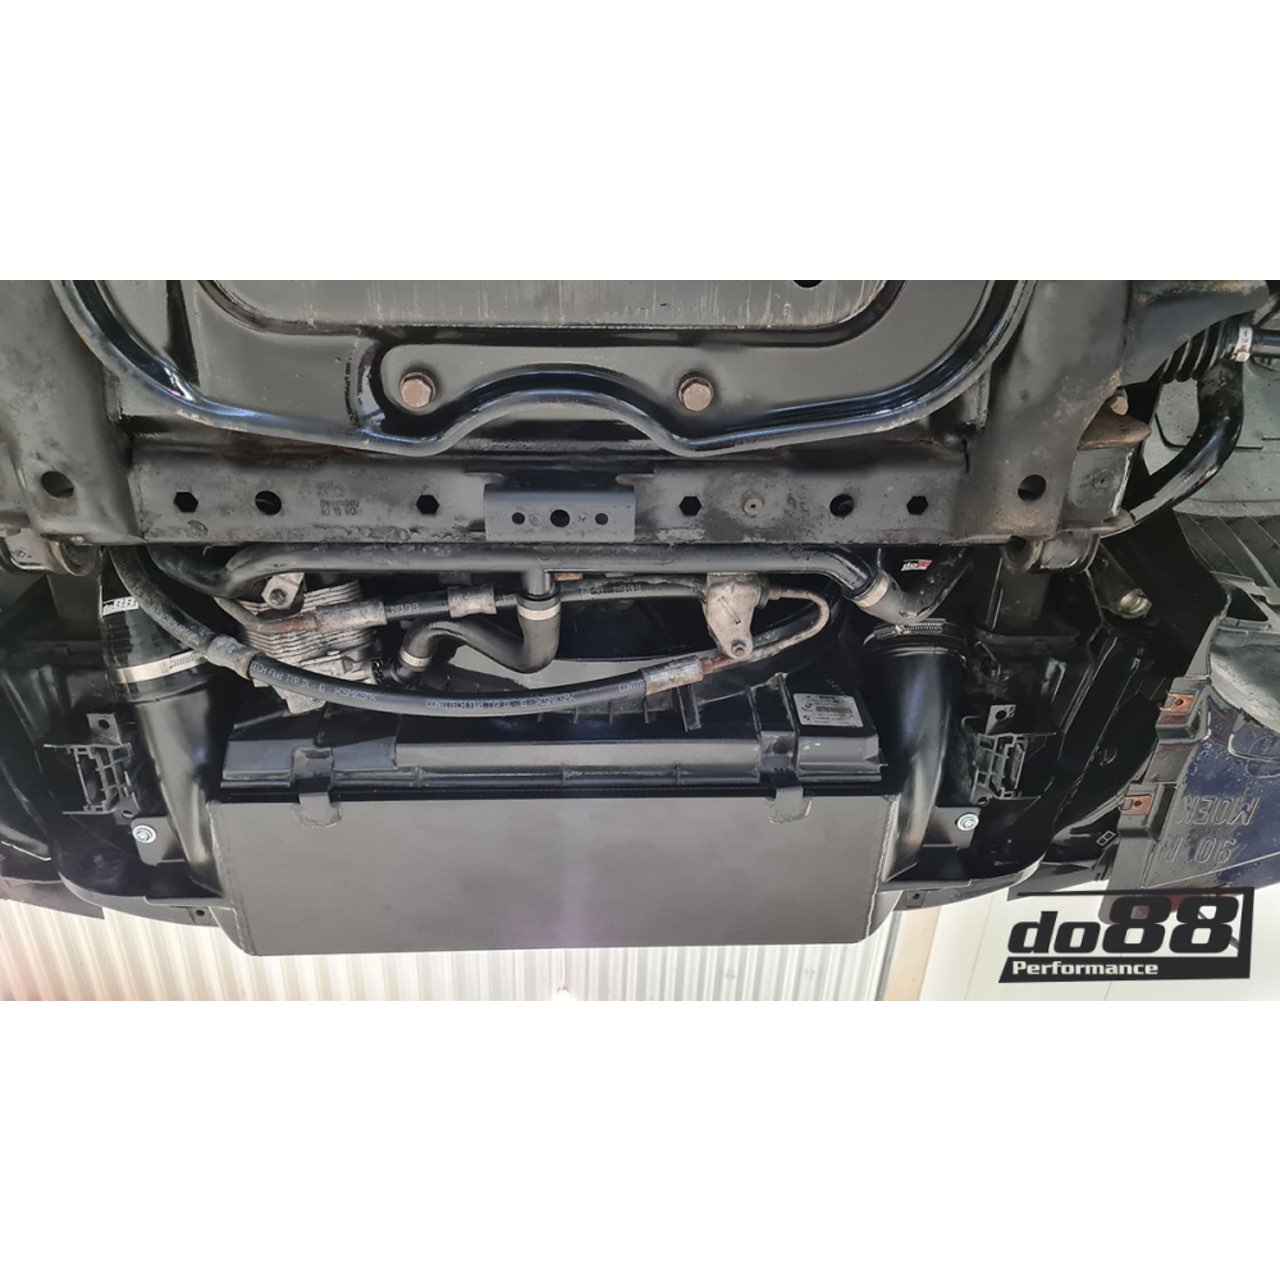 Forge Turbolader Hitzeschutz für BMW N54, FMTUBL8